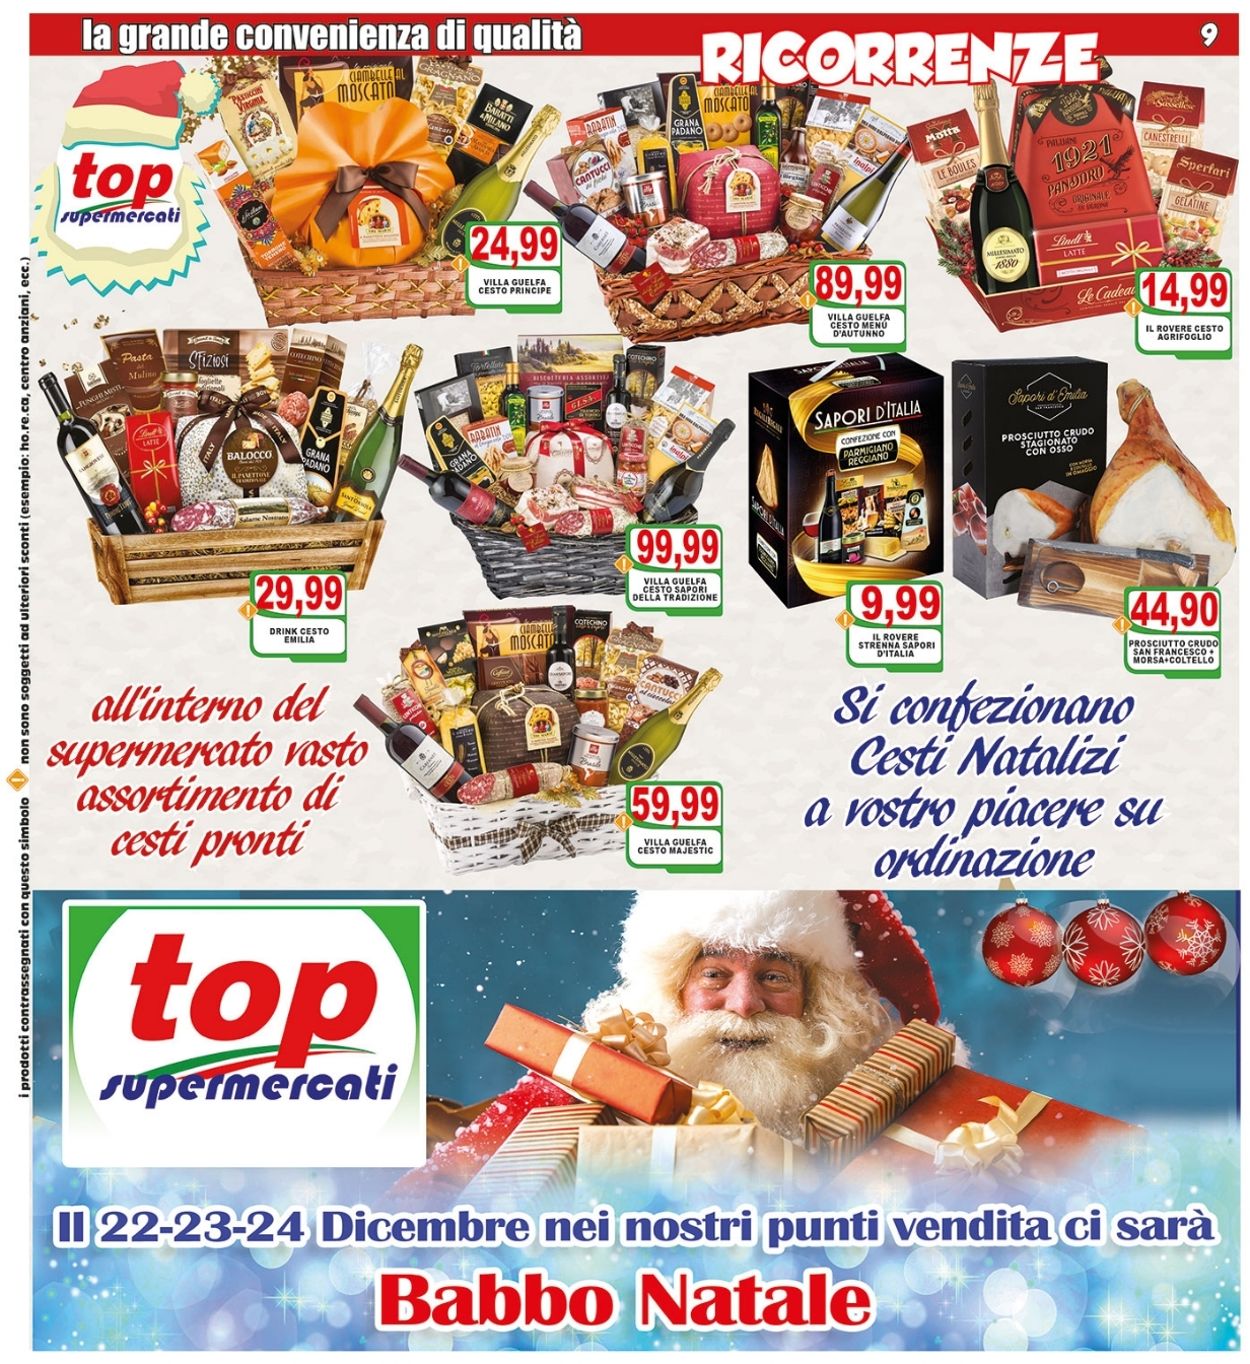 Volantino Top Supermercati - Natale 2021 - Offerte 13/12-24/12/2021 (Pagina 9)